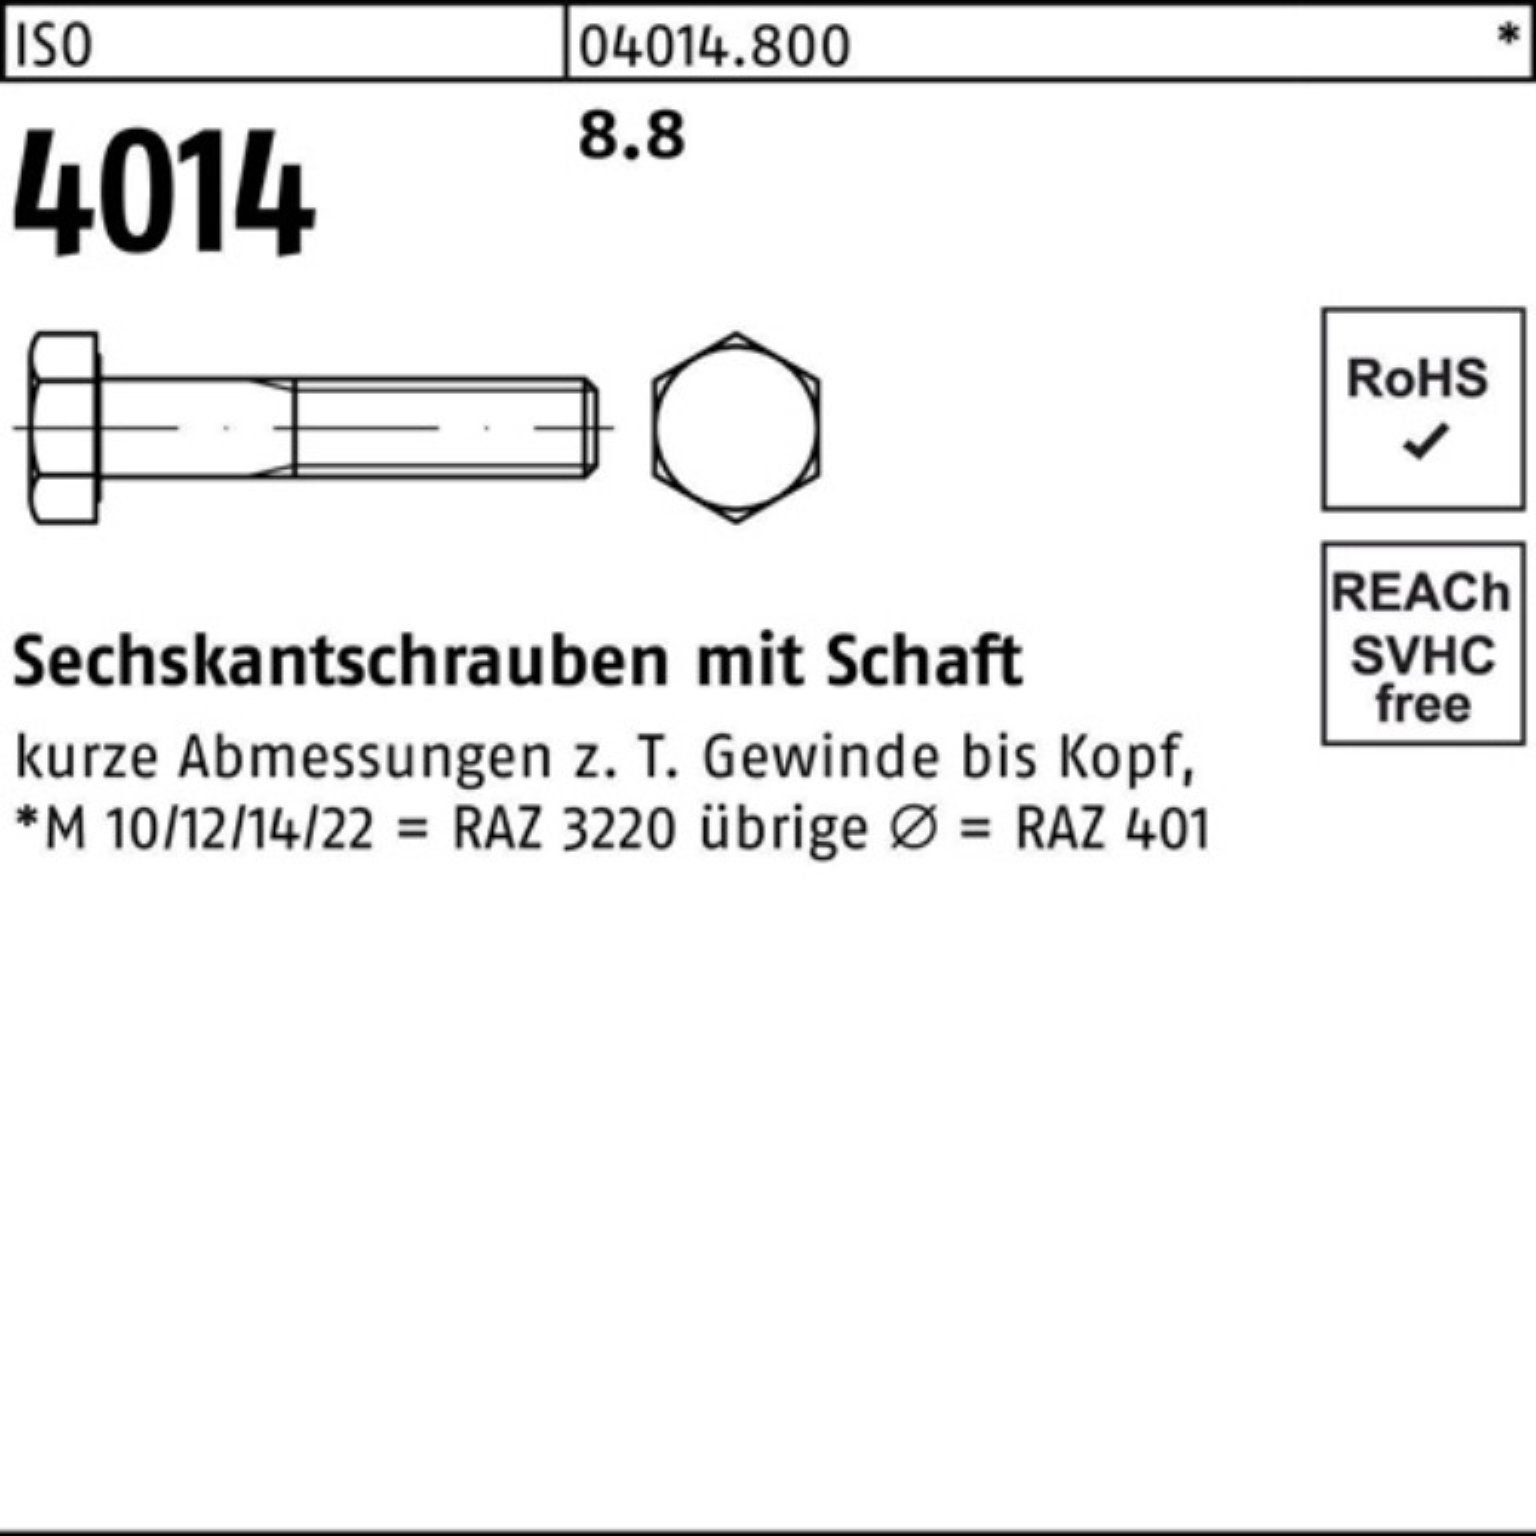 Bufab Sechskantschraube 100er Sechskantschraube 130 Schaft Stück 1 4014 ISO ISO 8.8 M27x Pack